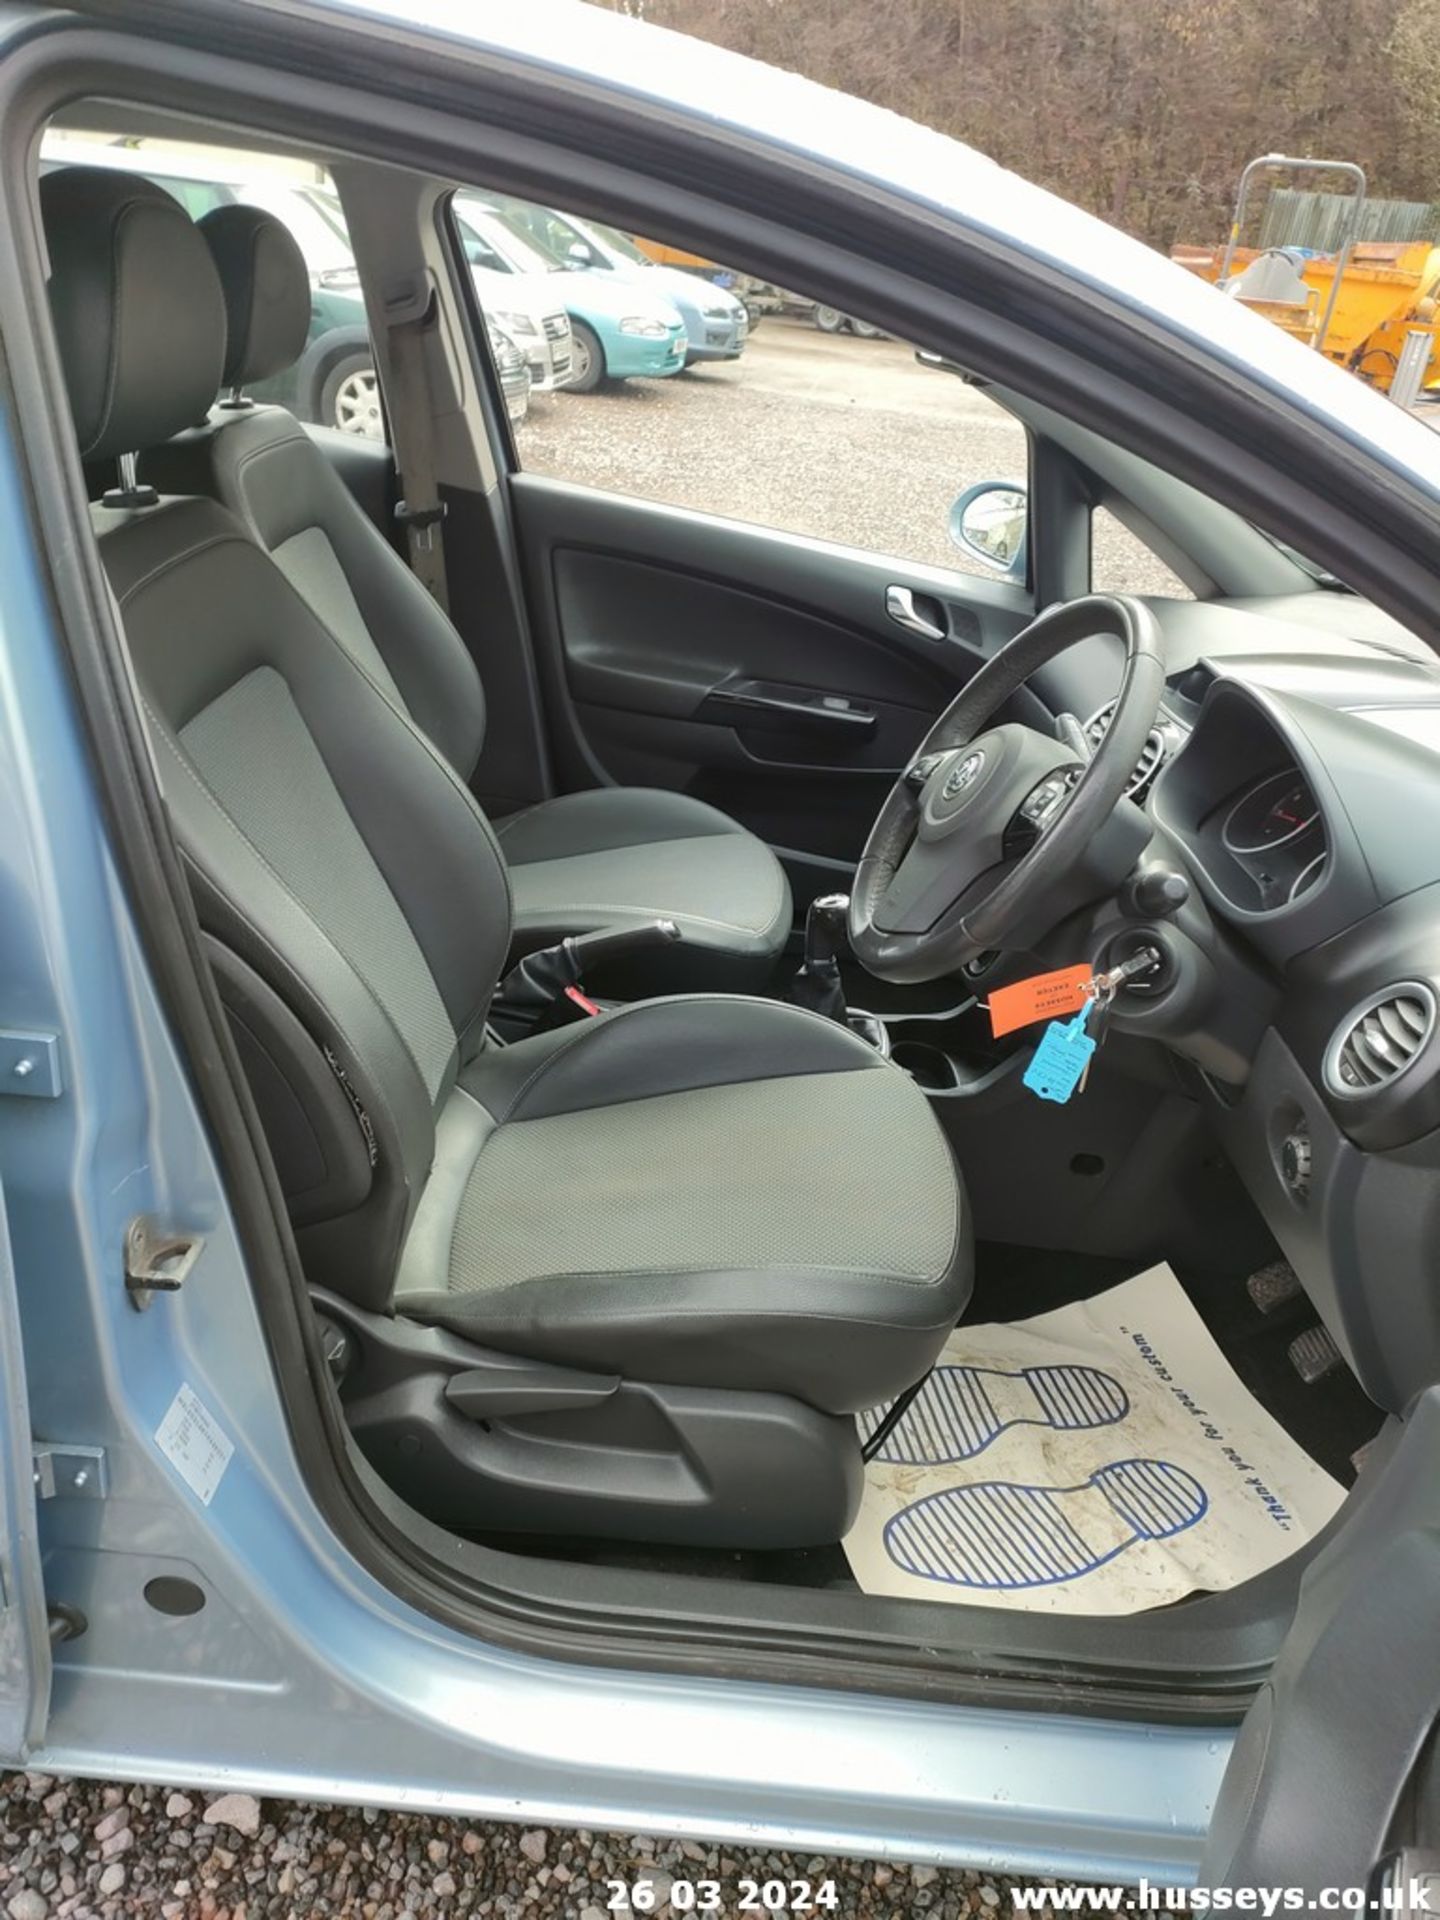 07/57 VAUXHALL CORSA DESIGN - 1364cc 5dr Hatchback (Blue, 118k) - Image 47 of 59